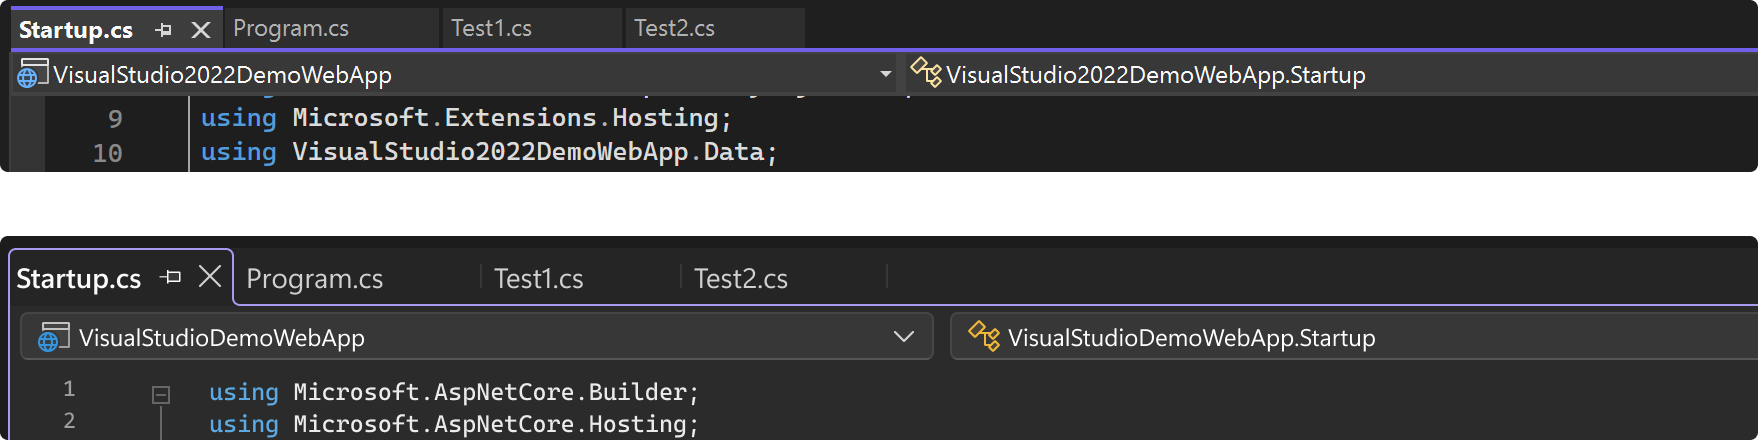 VisualStudio中编辑器窗口顶部的文档选项卡顶部的两个图像，位于深色主题中。上图显示了今天VisualStudio的快照，下图是文档选项卡的模型，其中包含包含选项卡和整个编辑器框架的大纲。